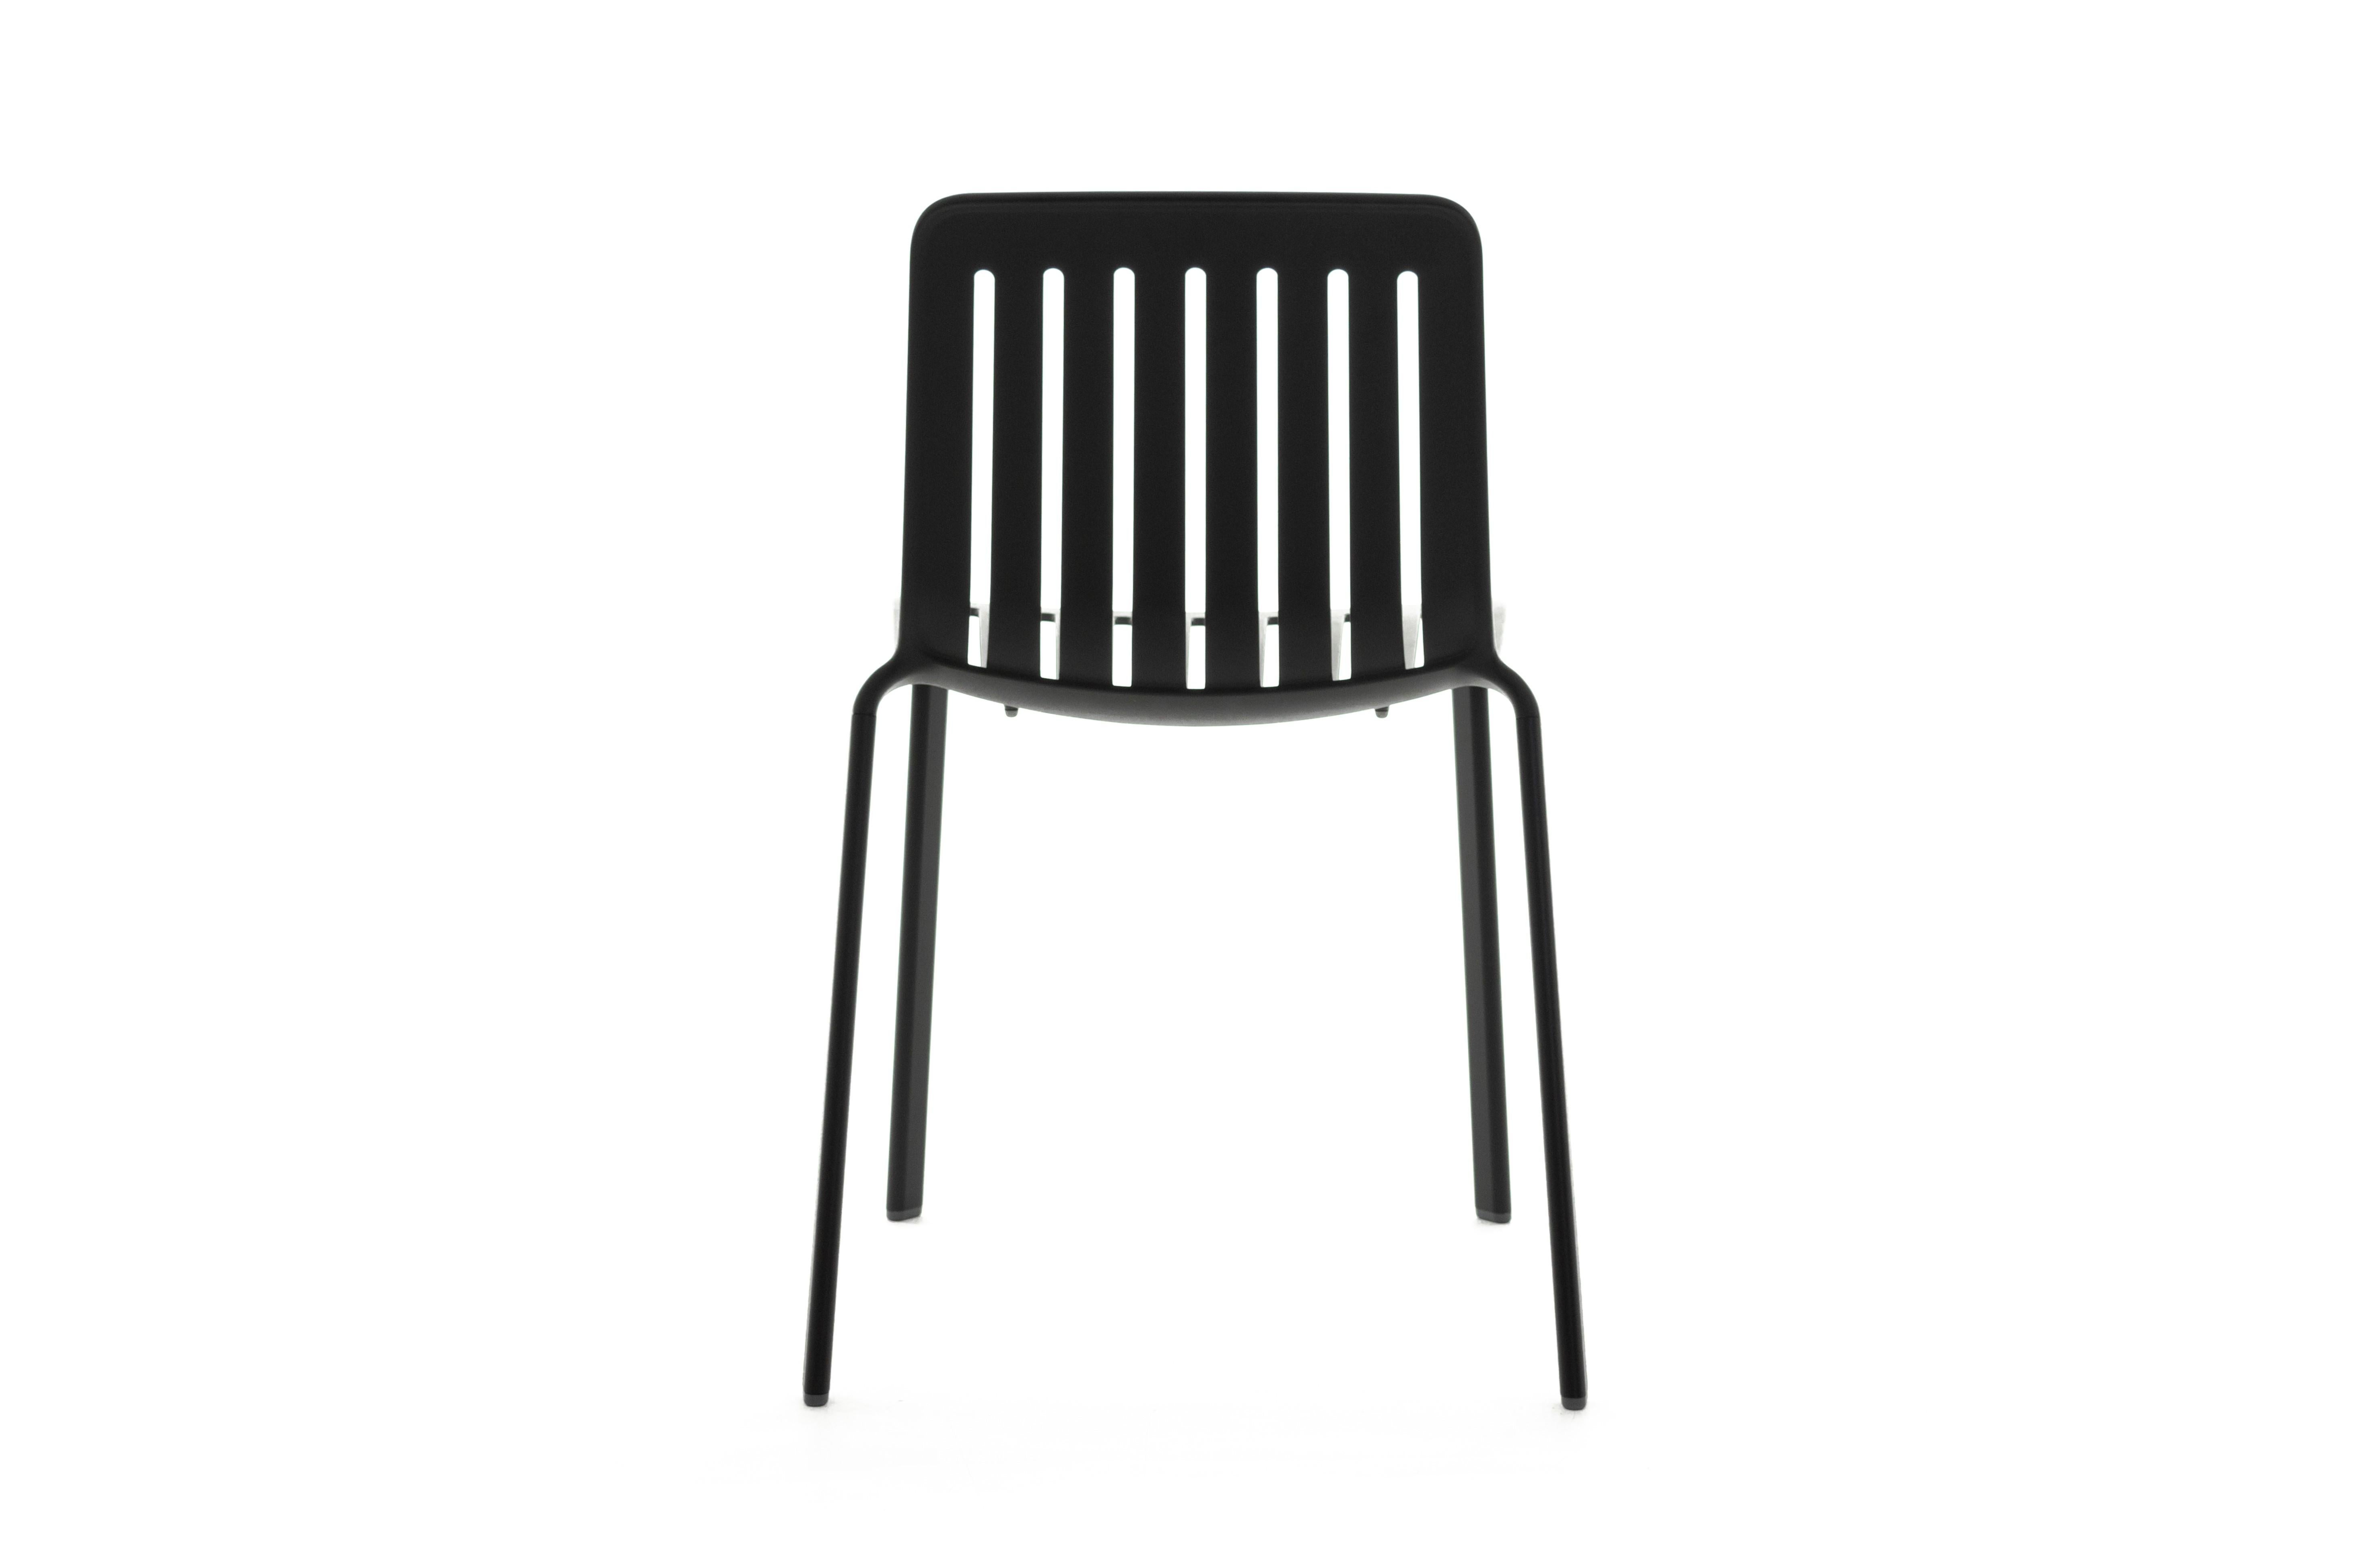 La chaise Plato conçue par Jasper Morrison est polyvalente et convient parfaitement aux espaces domestiques, professionnels et publics, à l'intérieur comme à l'extérieur. Sous-entendu et d'inspiration néoclassique, d'où son nom qui fait référence à